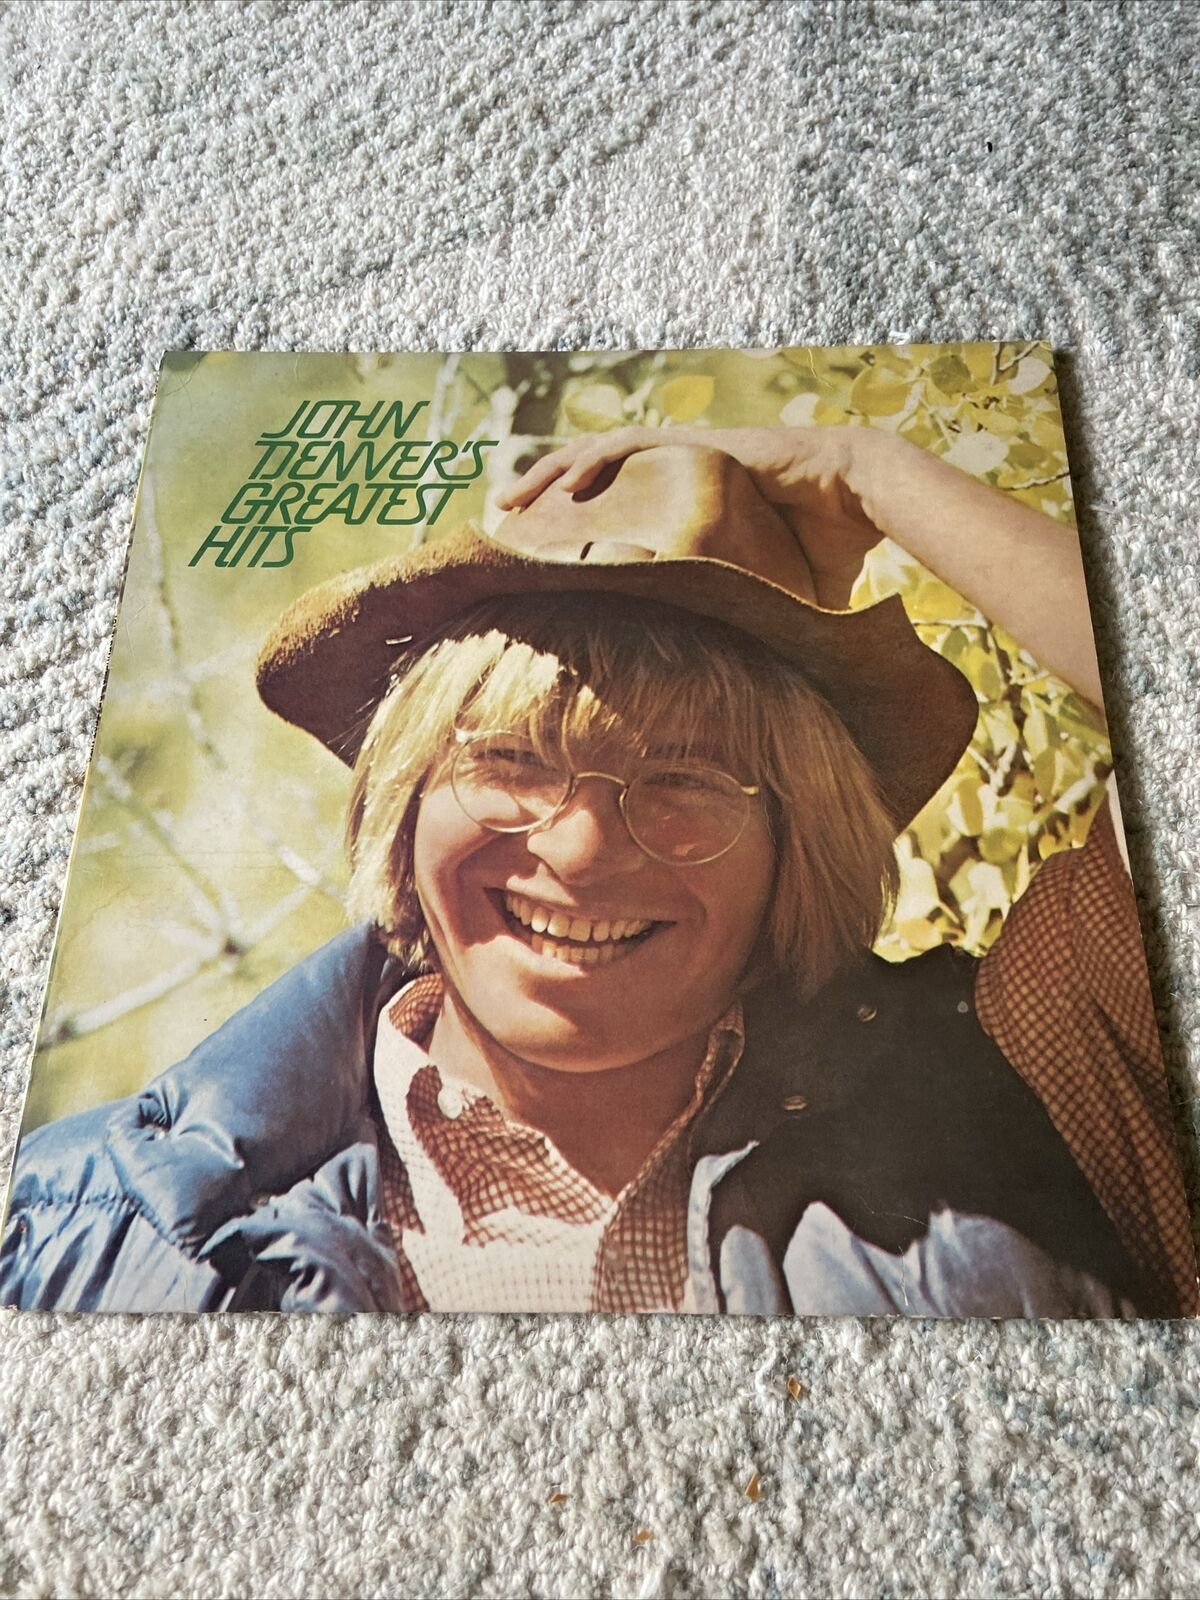 Vintage John Denver\'s Greatest Hits Double LP 1973